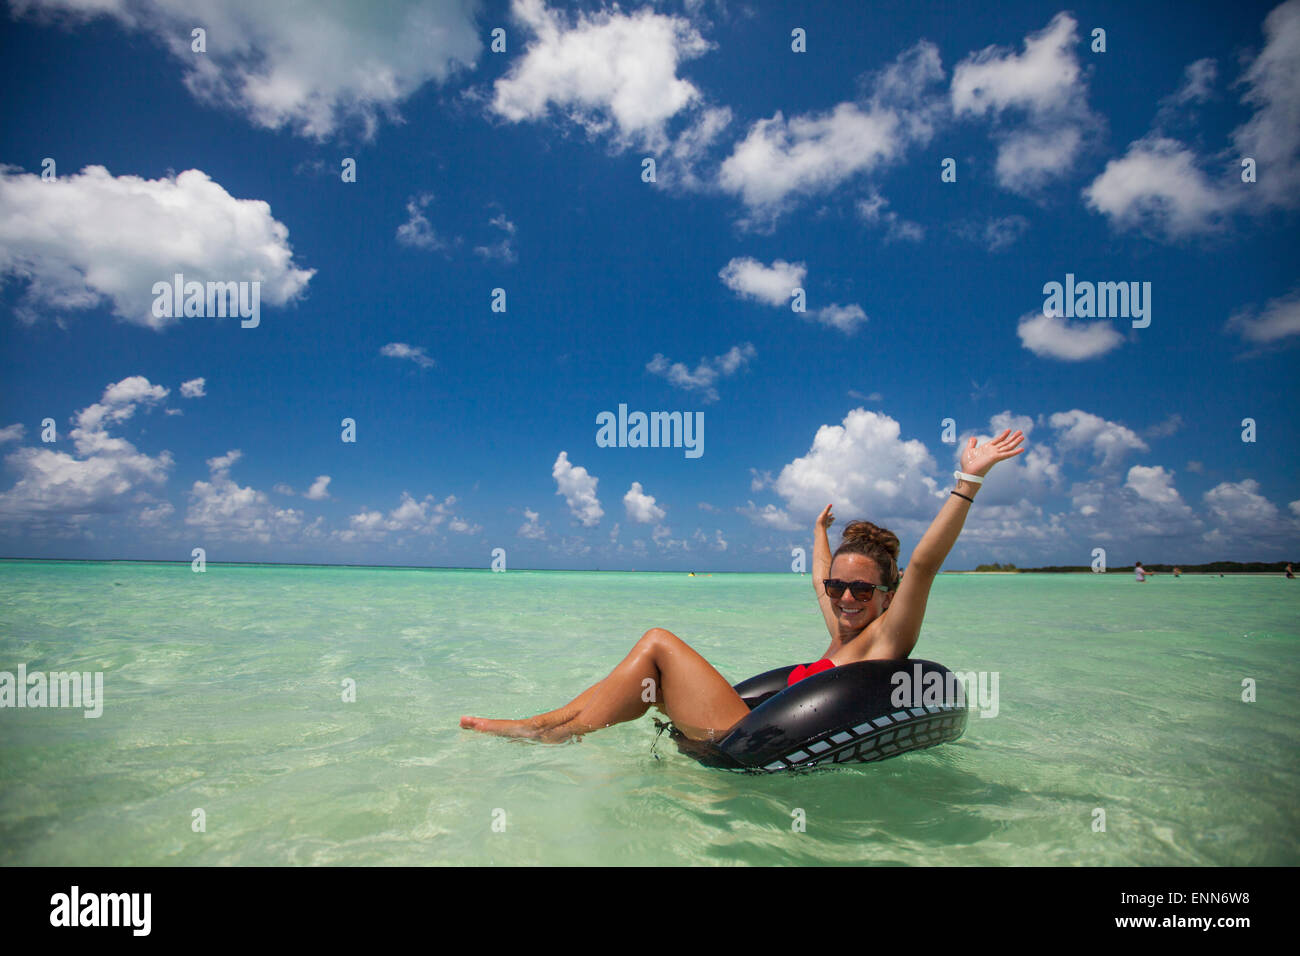 Une jeune femme portant un bikini flotte sur un tube gonflable dans l'eau turquoise en vacances à Cayo Coco, Cuba. Banque D'Images